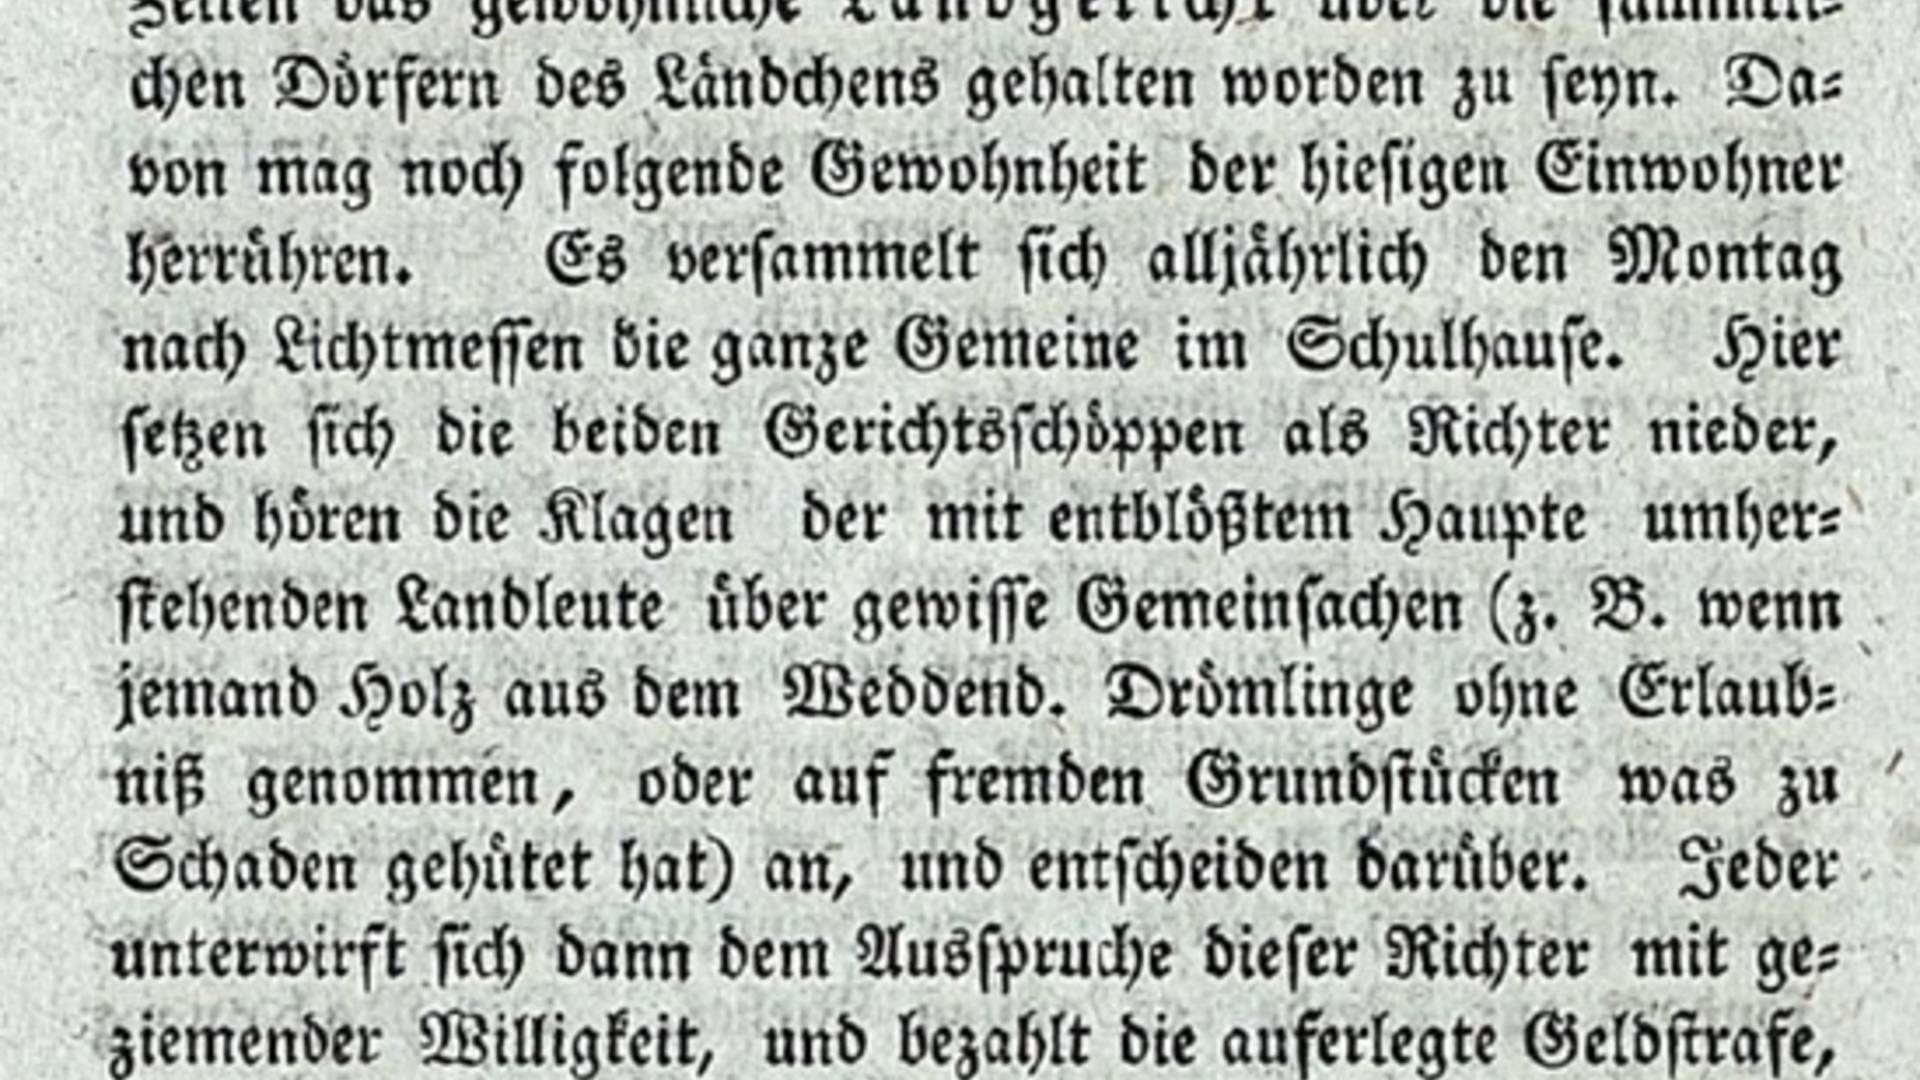 anekdote weddendorf © Behrends-Chronik 1798